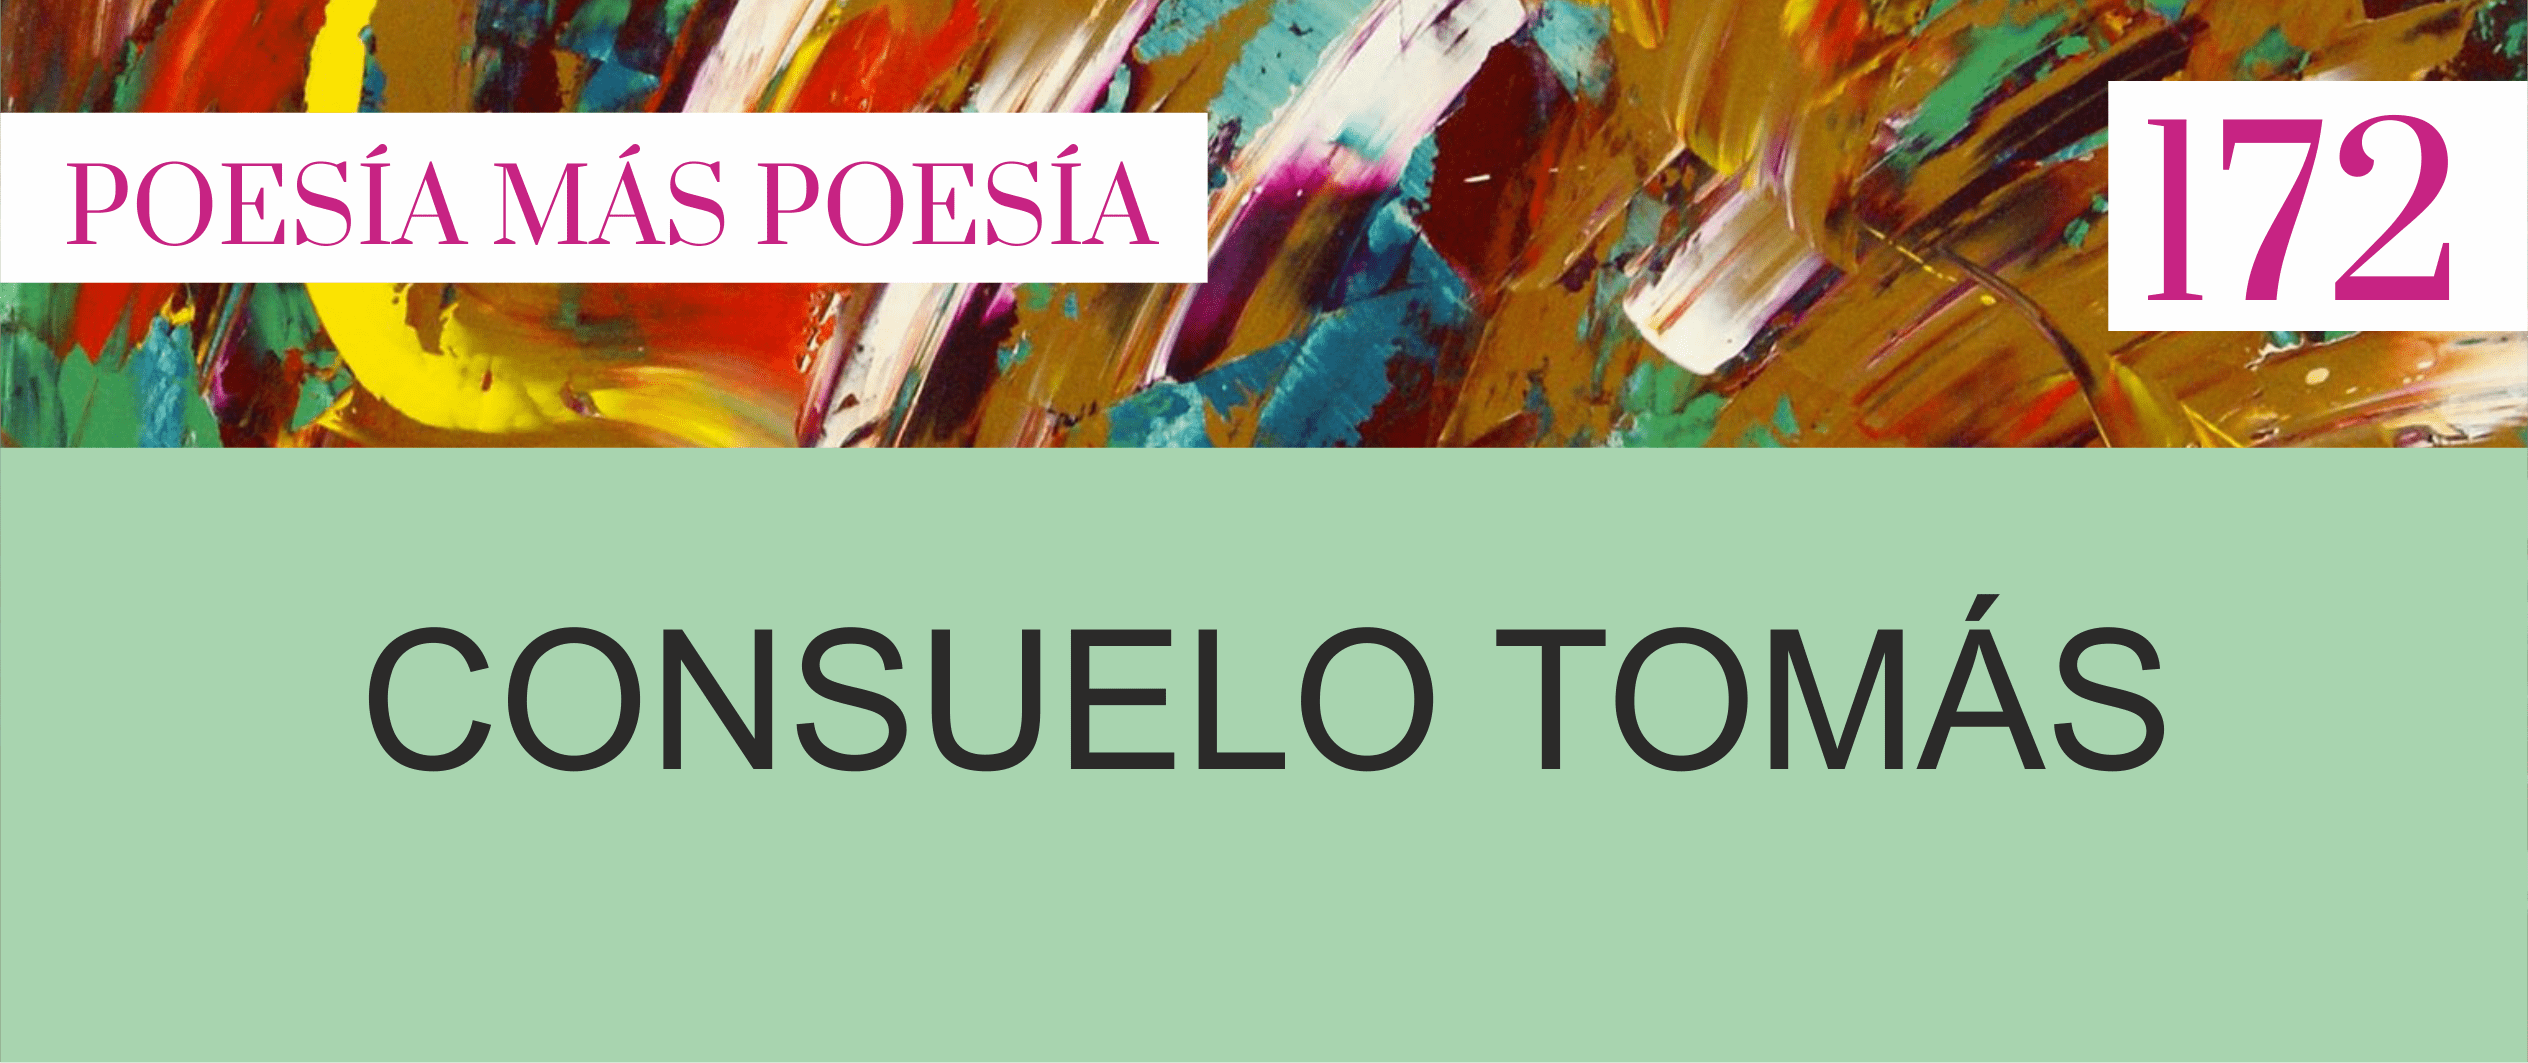 172. Poesía más Poesía: Consuelo Tomás